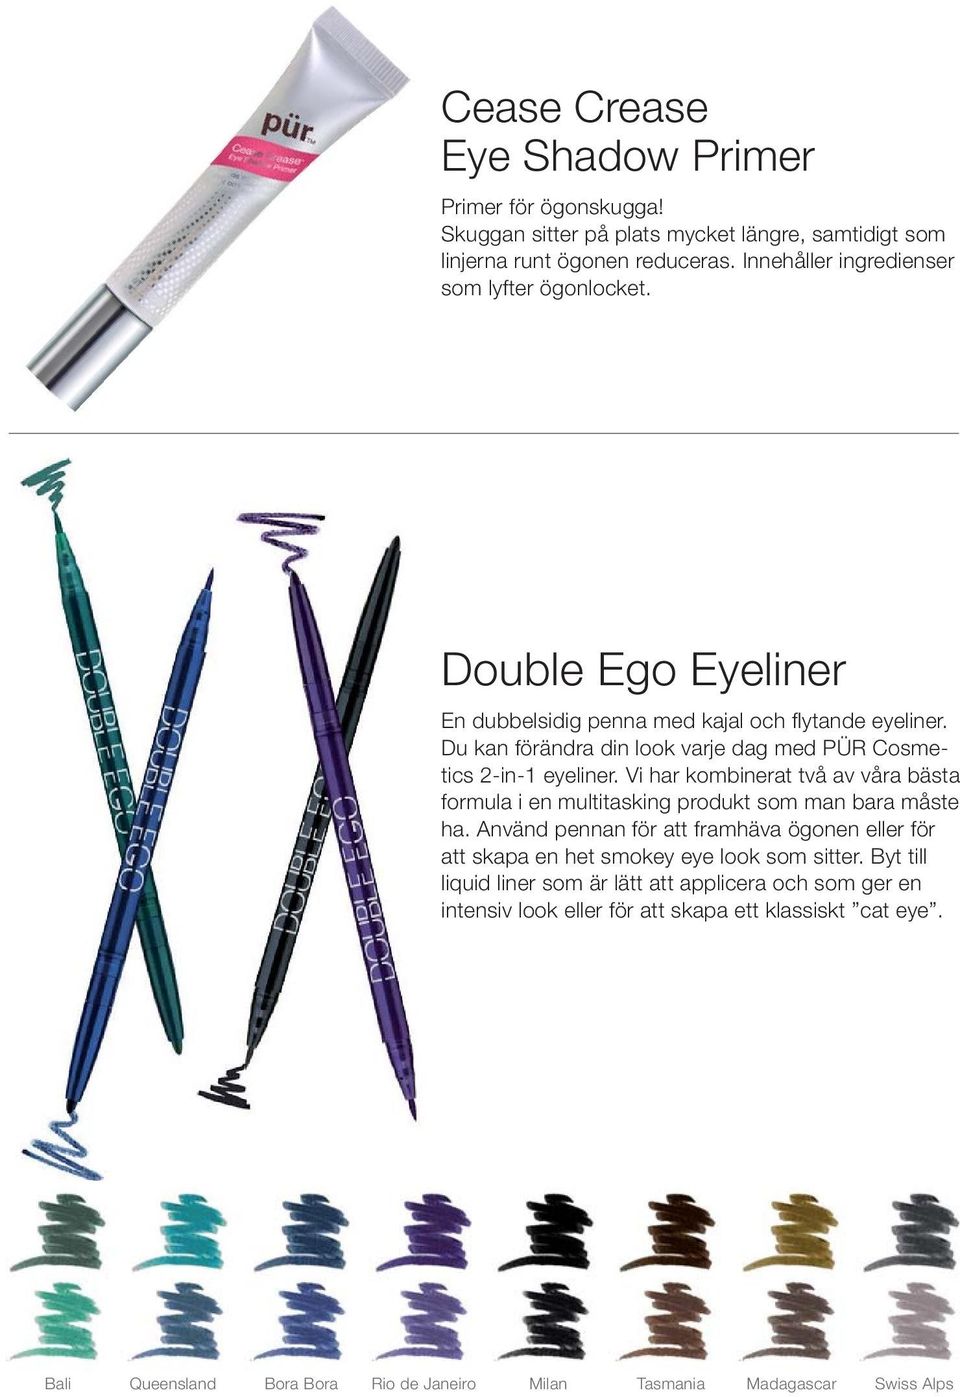 Du kan förändra din look varje dag med PÜR Cosmetics 2-in-1 eyeliner. Vi har kombinerat två av våra bästa formula i en multitasking produkt som man bara måste ha.